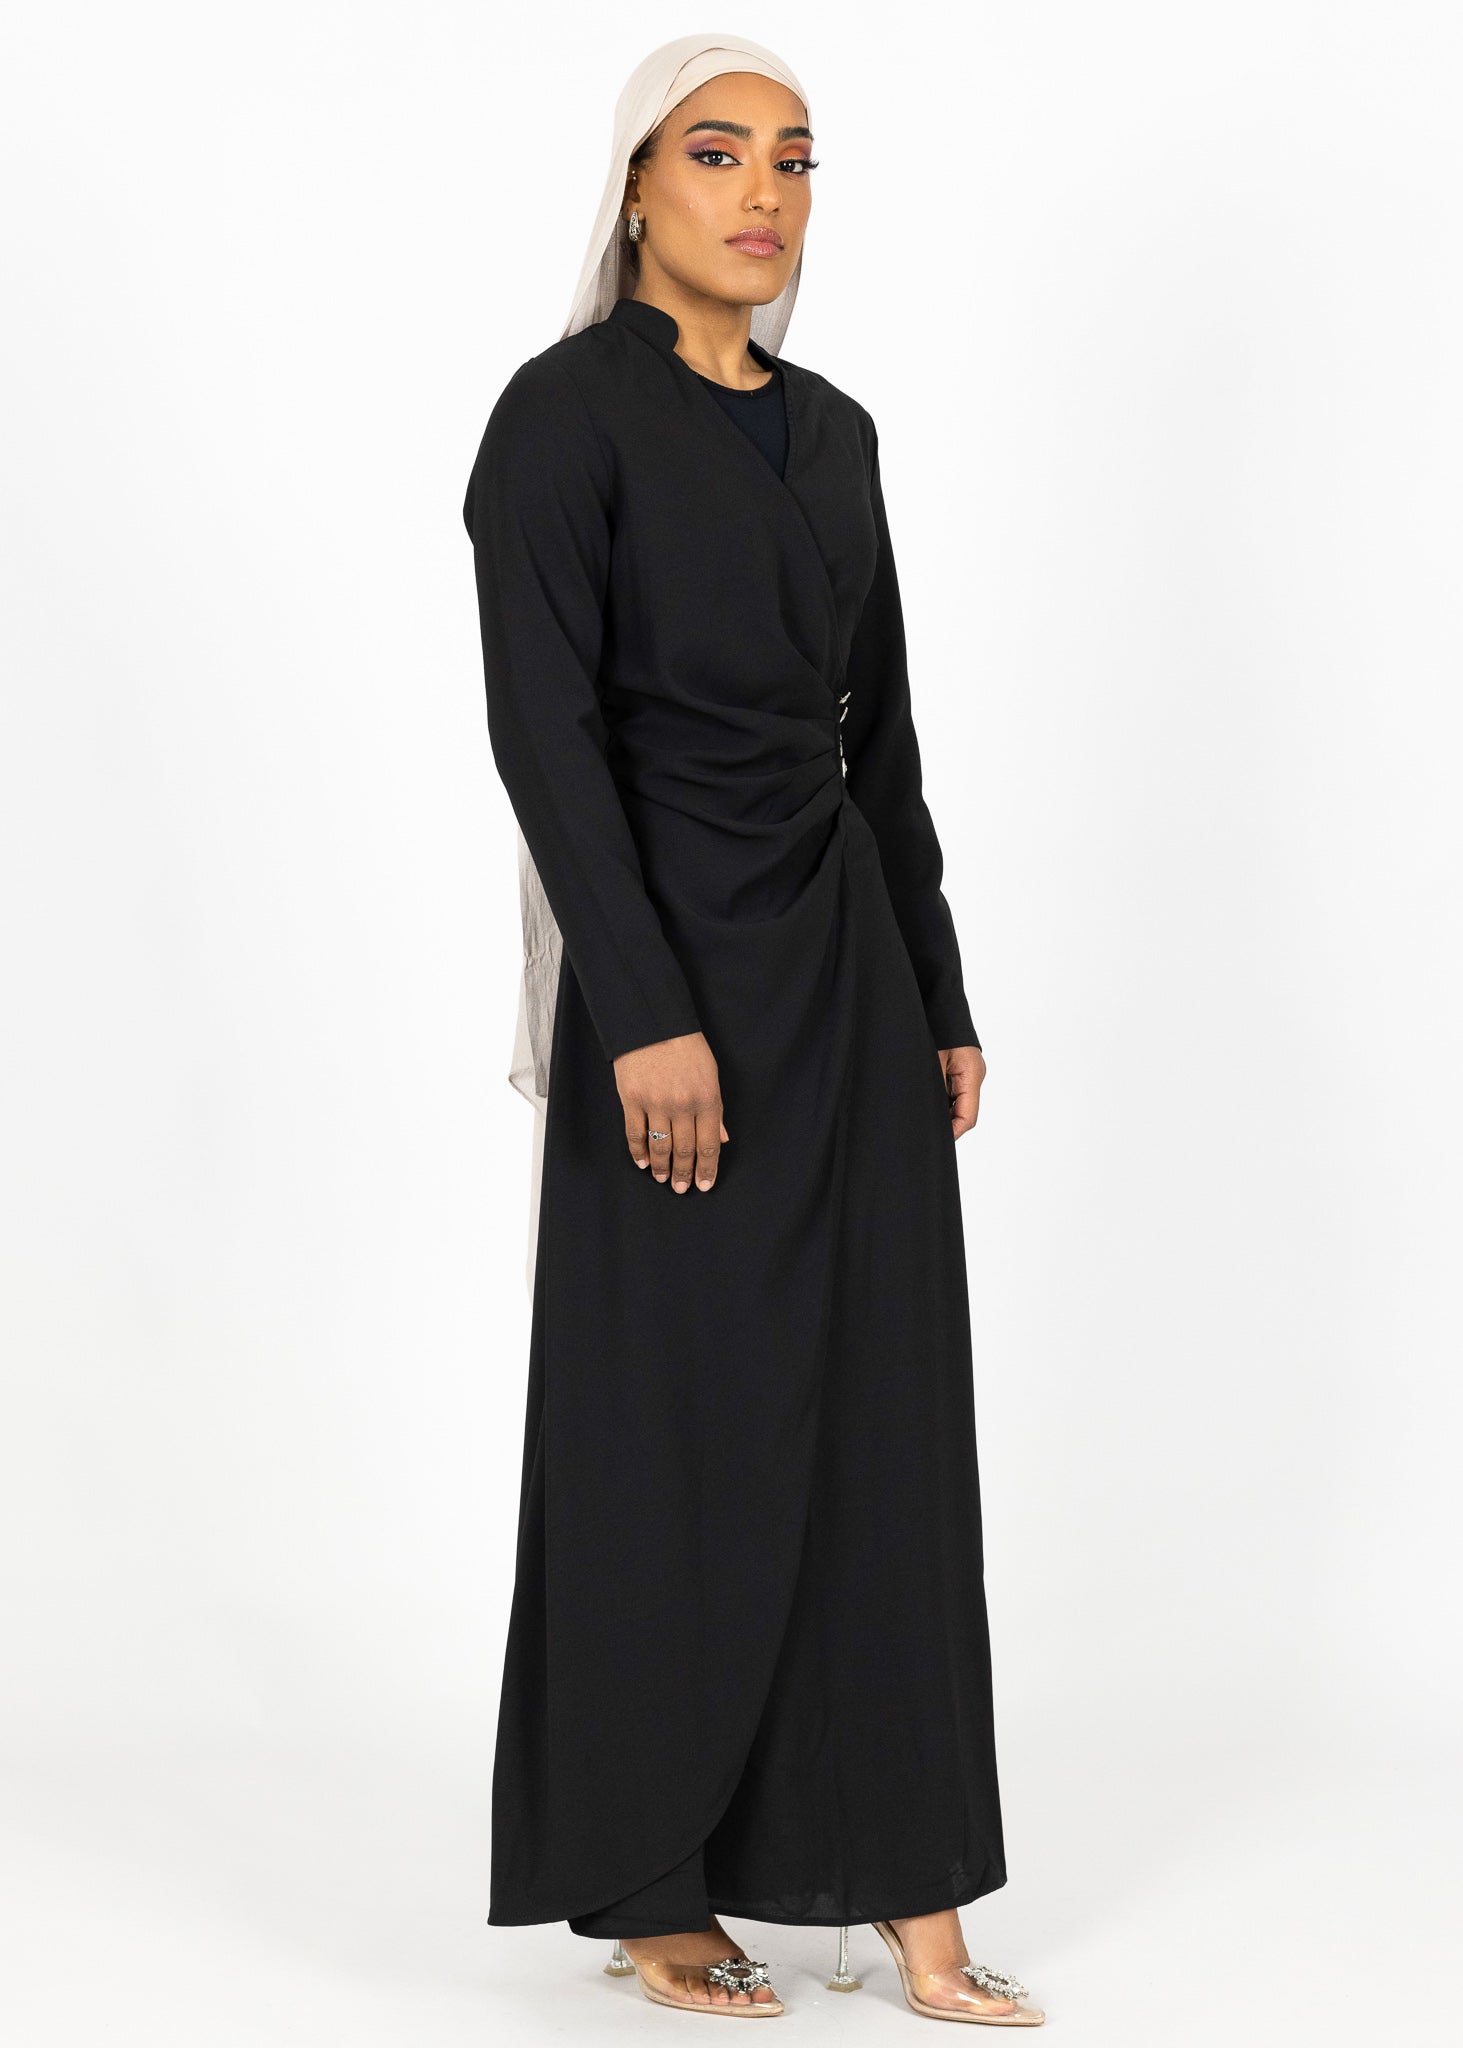 M7879Black-dress-abaya